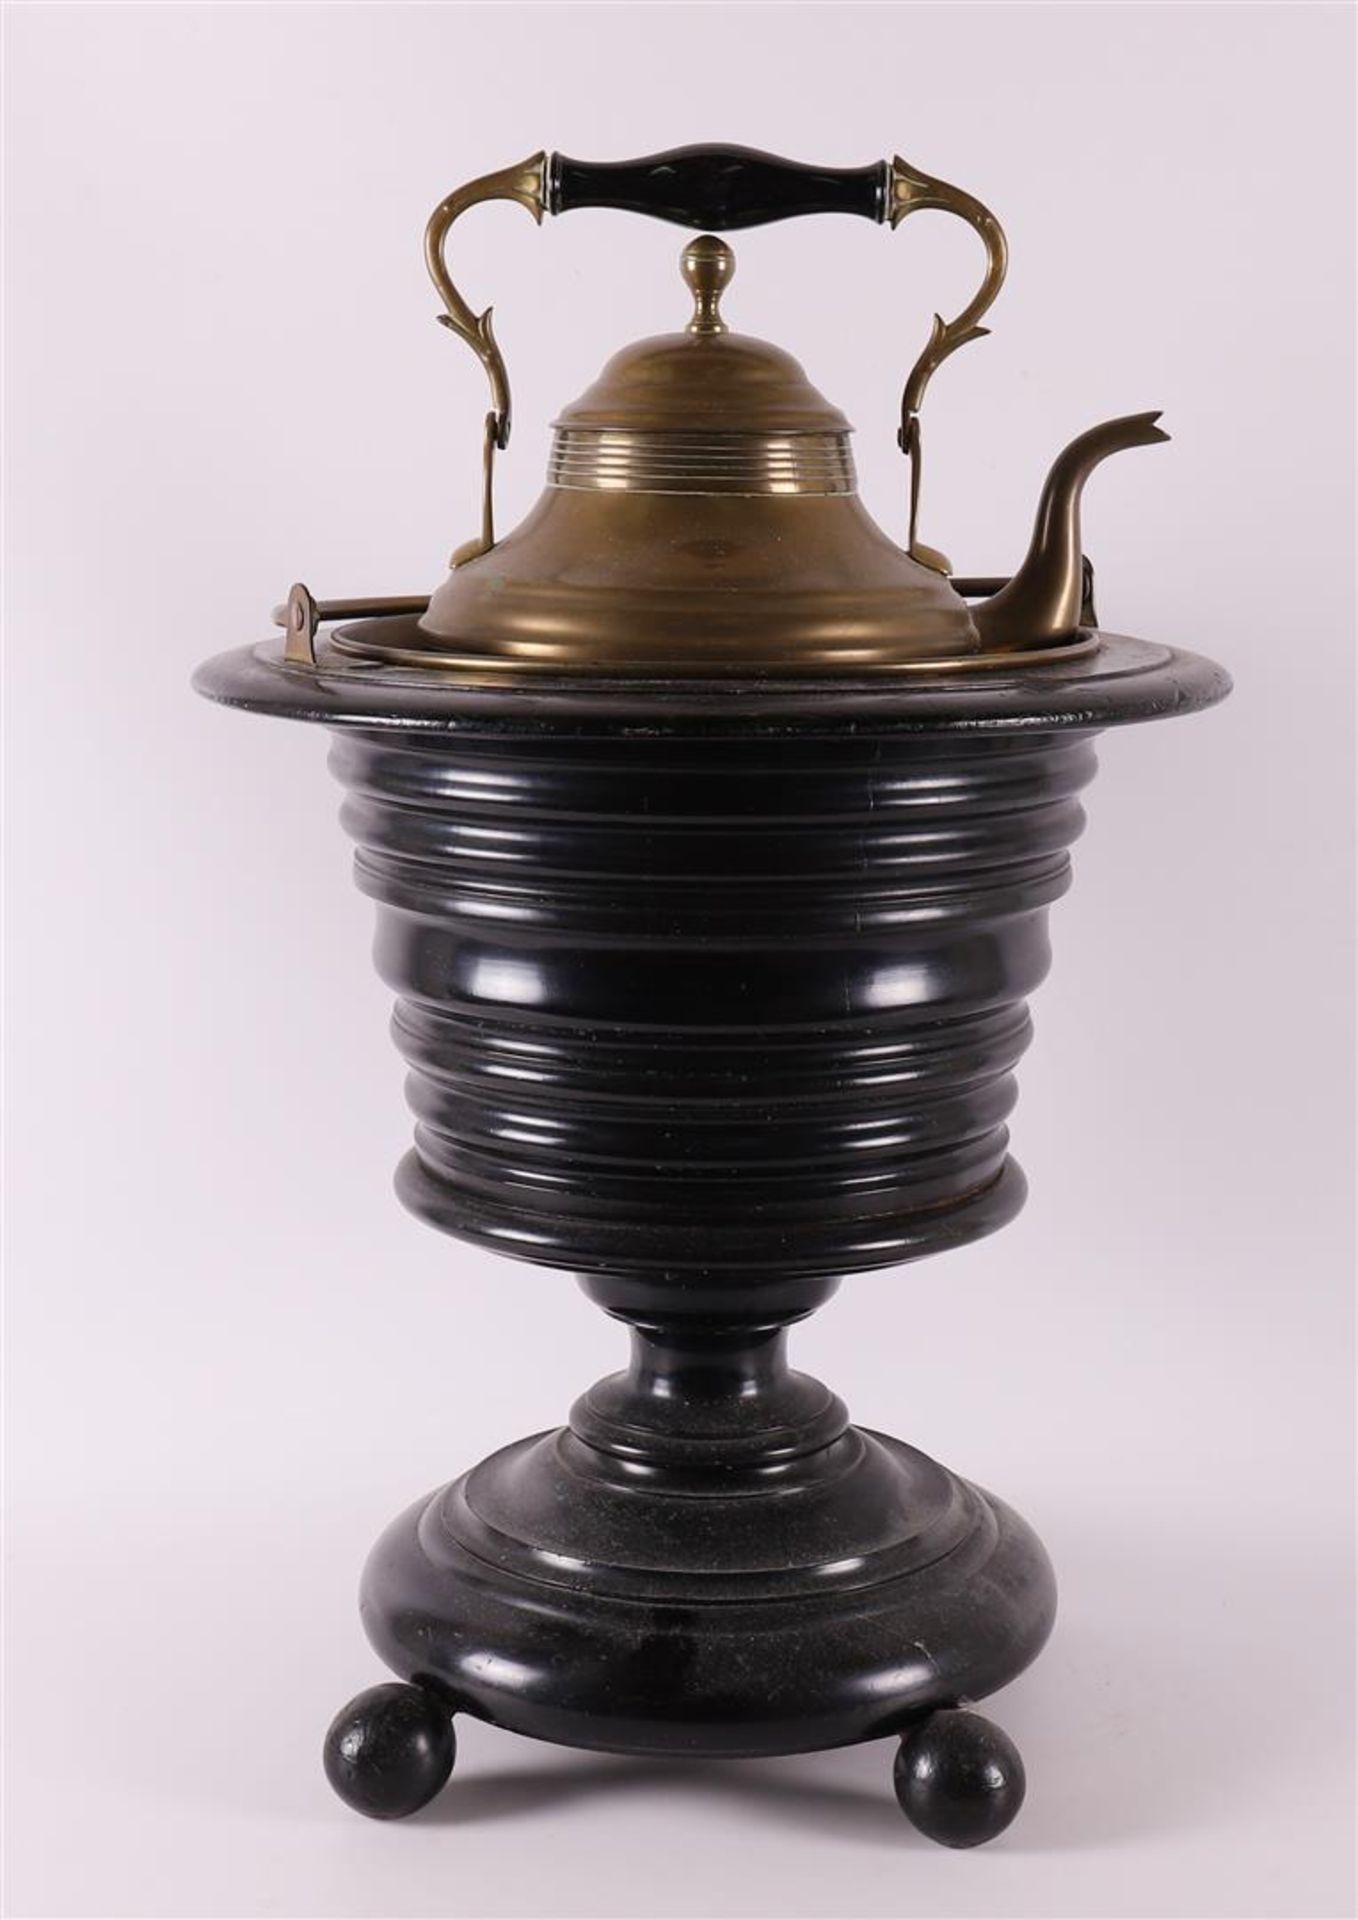 An ebonised tea stove on foot, second half 19th century.